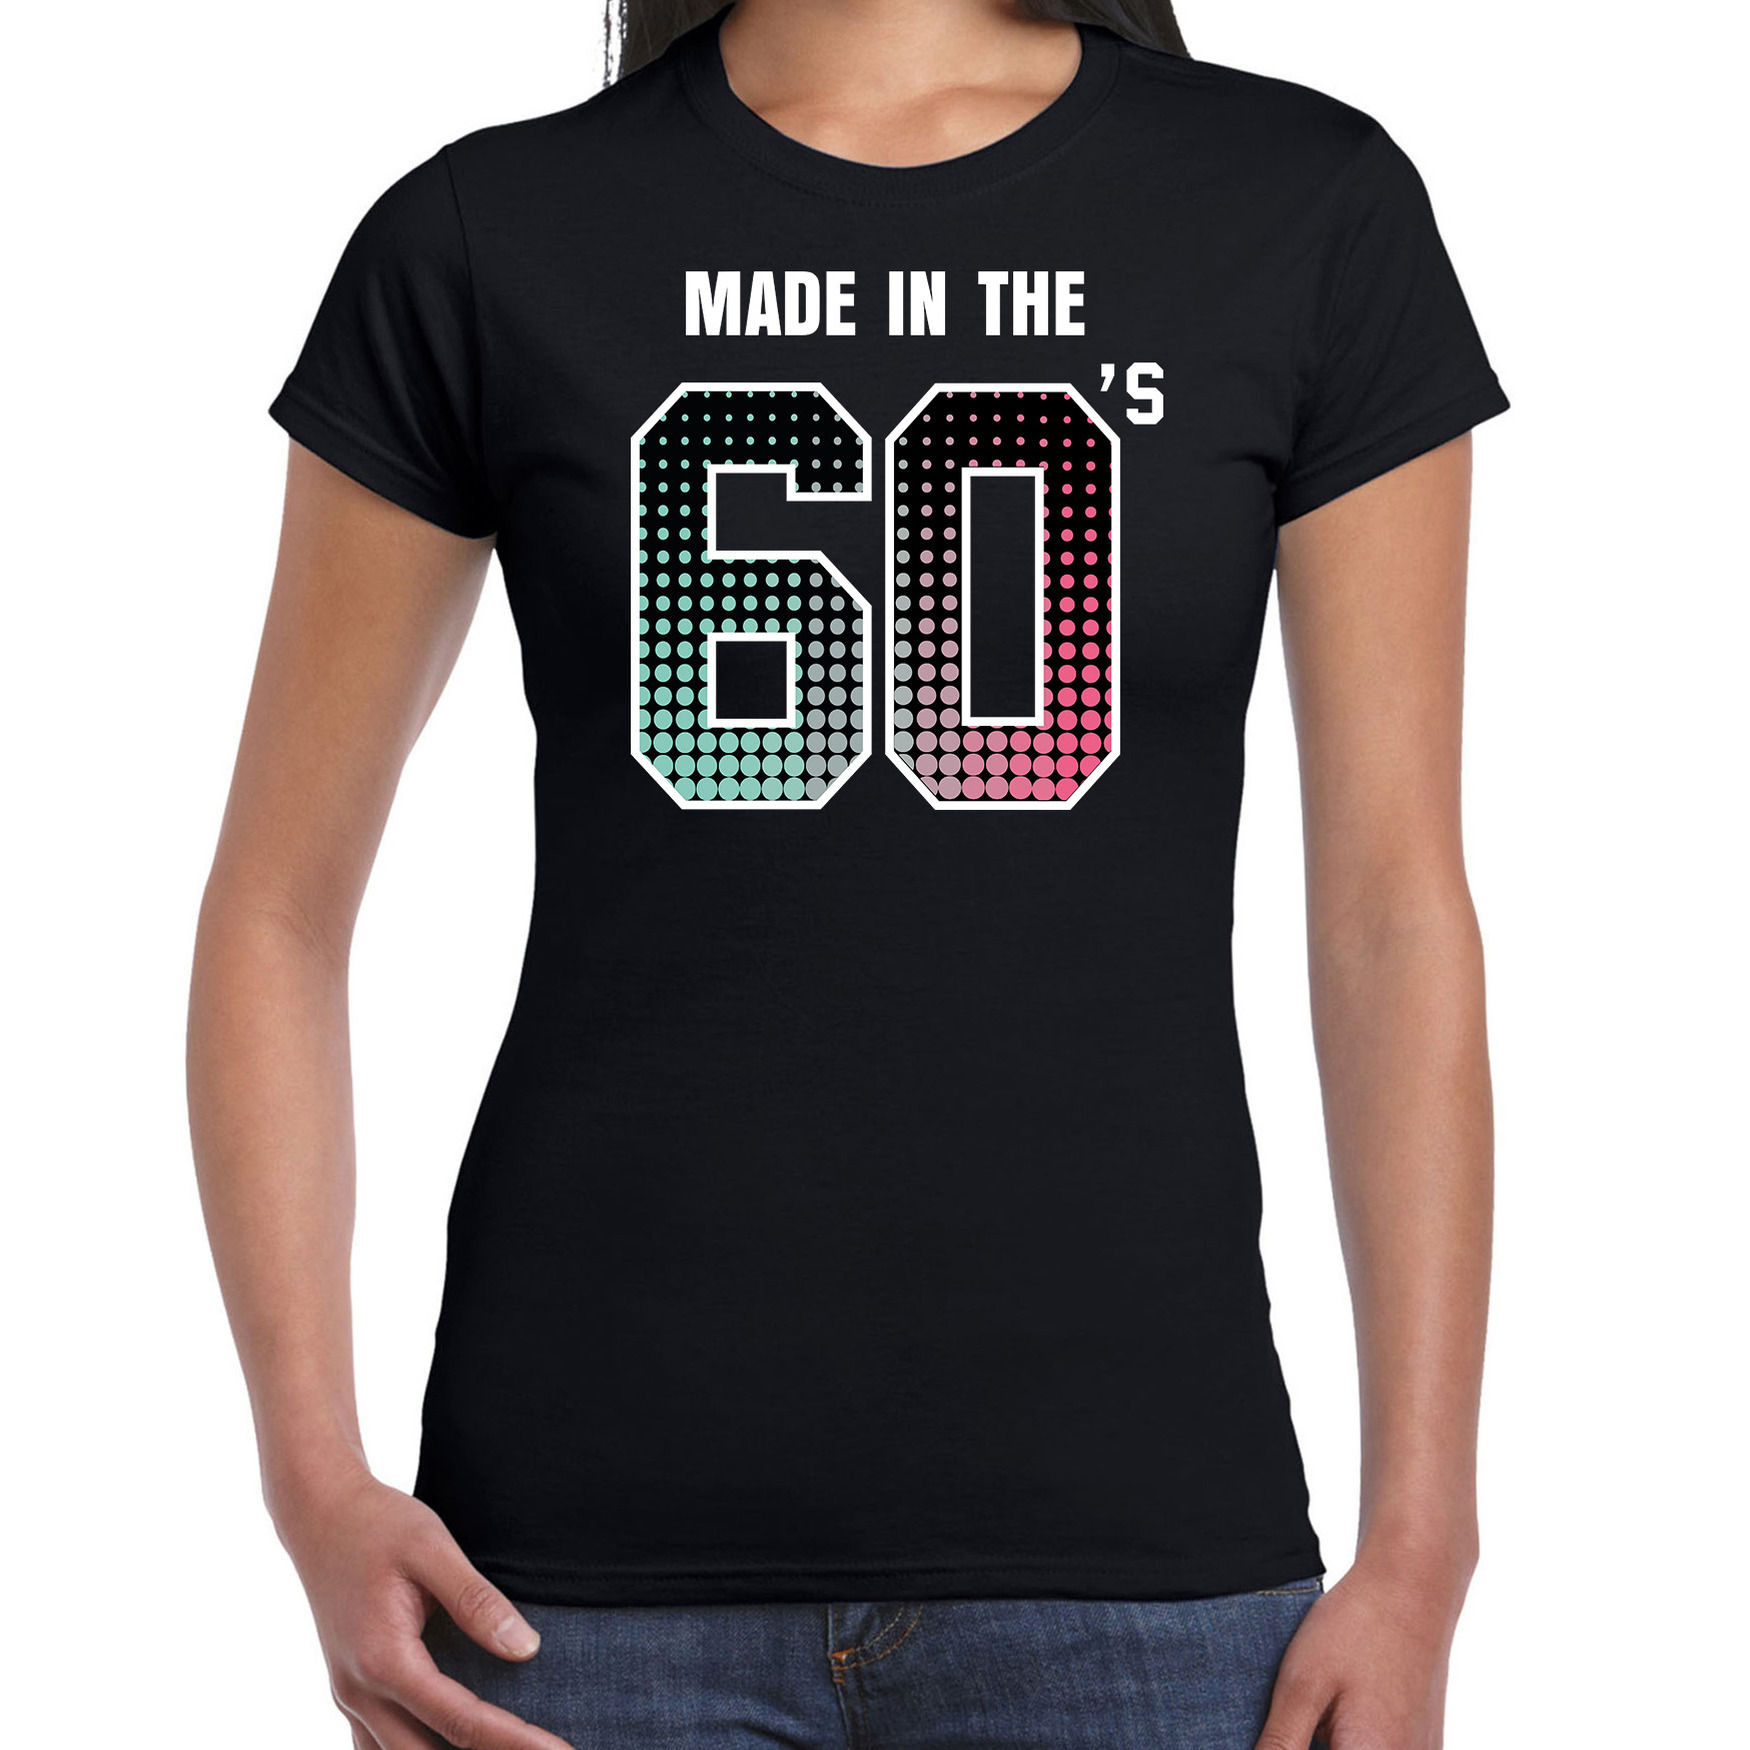 Sixties t-shirt / shirt made in the 60s / geboren in de jaren 60 zwart voor dames